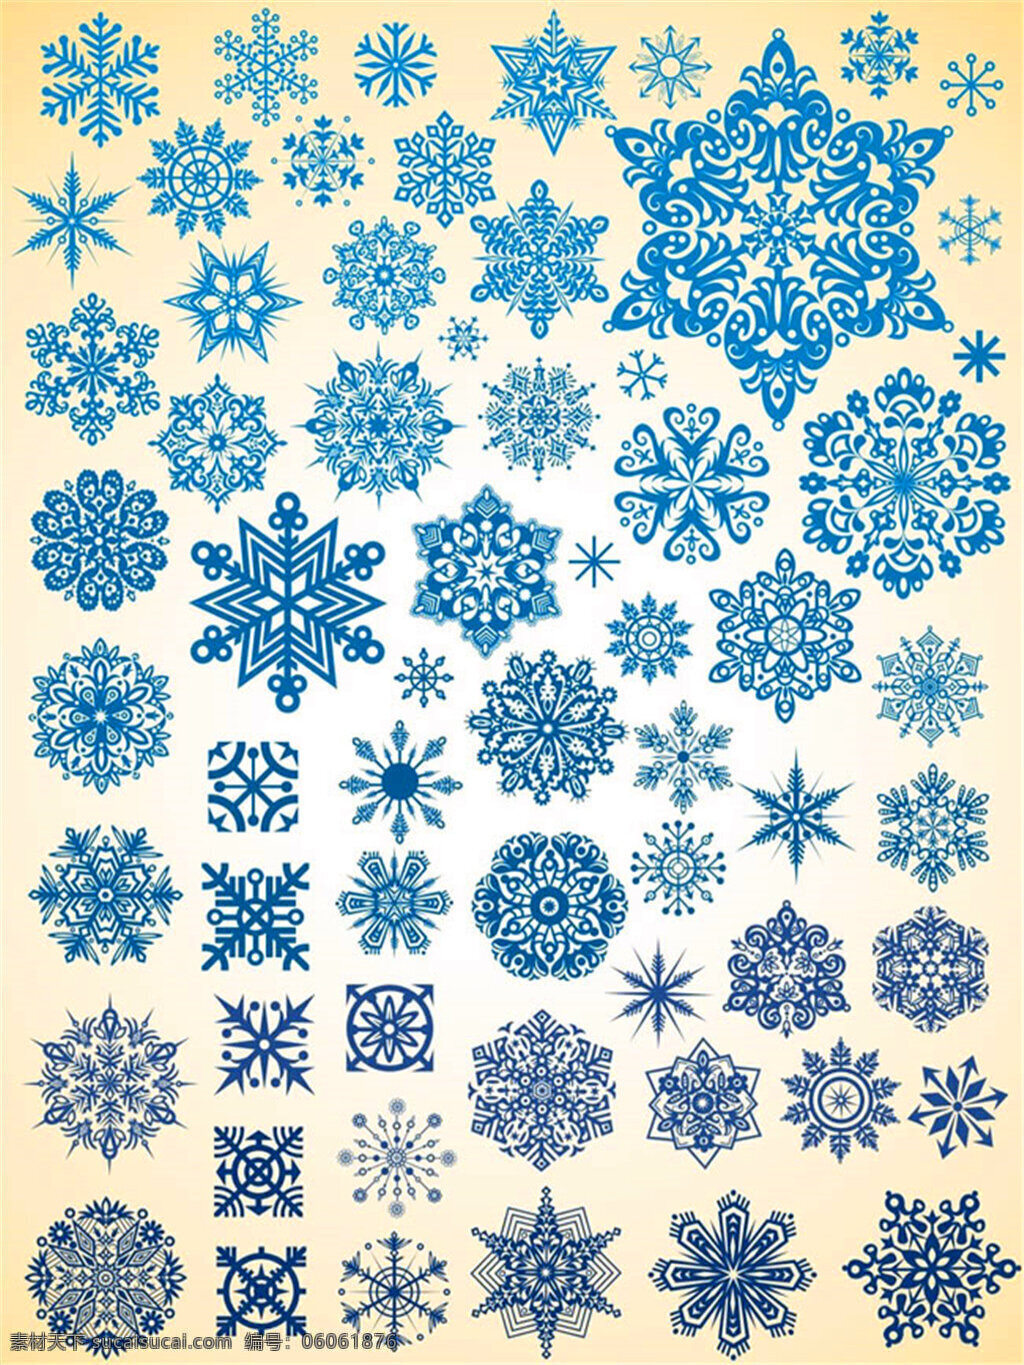 雪花 样式 矢量图 大全 雪花矢量图 雪花图片 雪花样式 大雪 下雪 唯美 蓝色 花 矢量素材 矢量图片